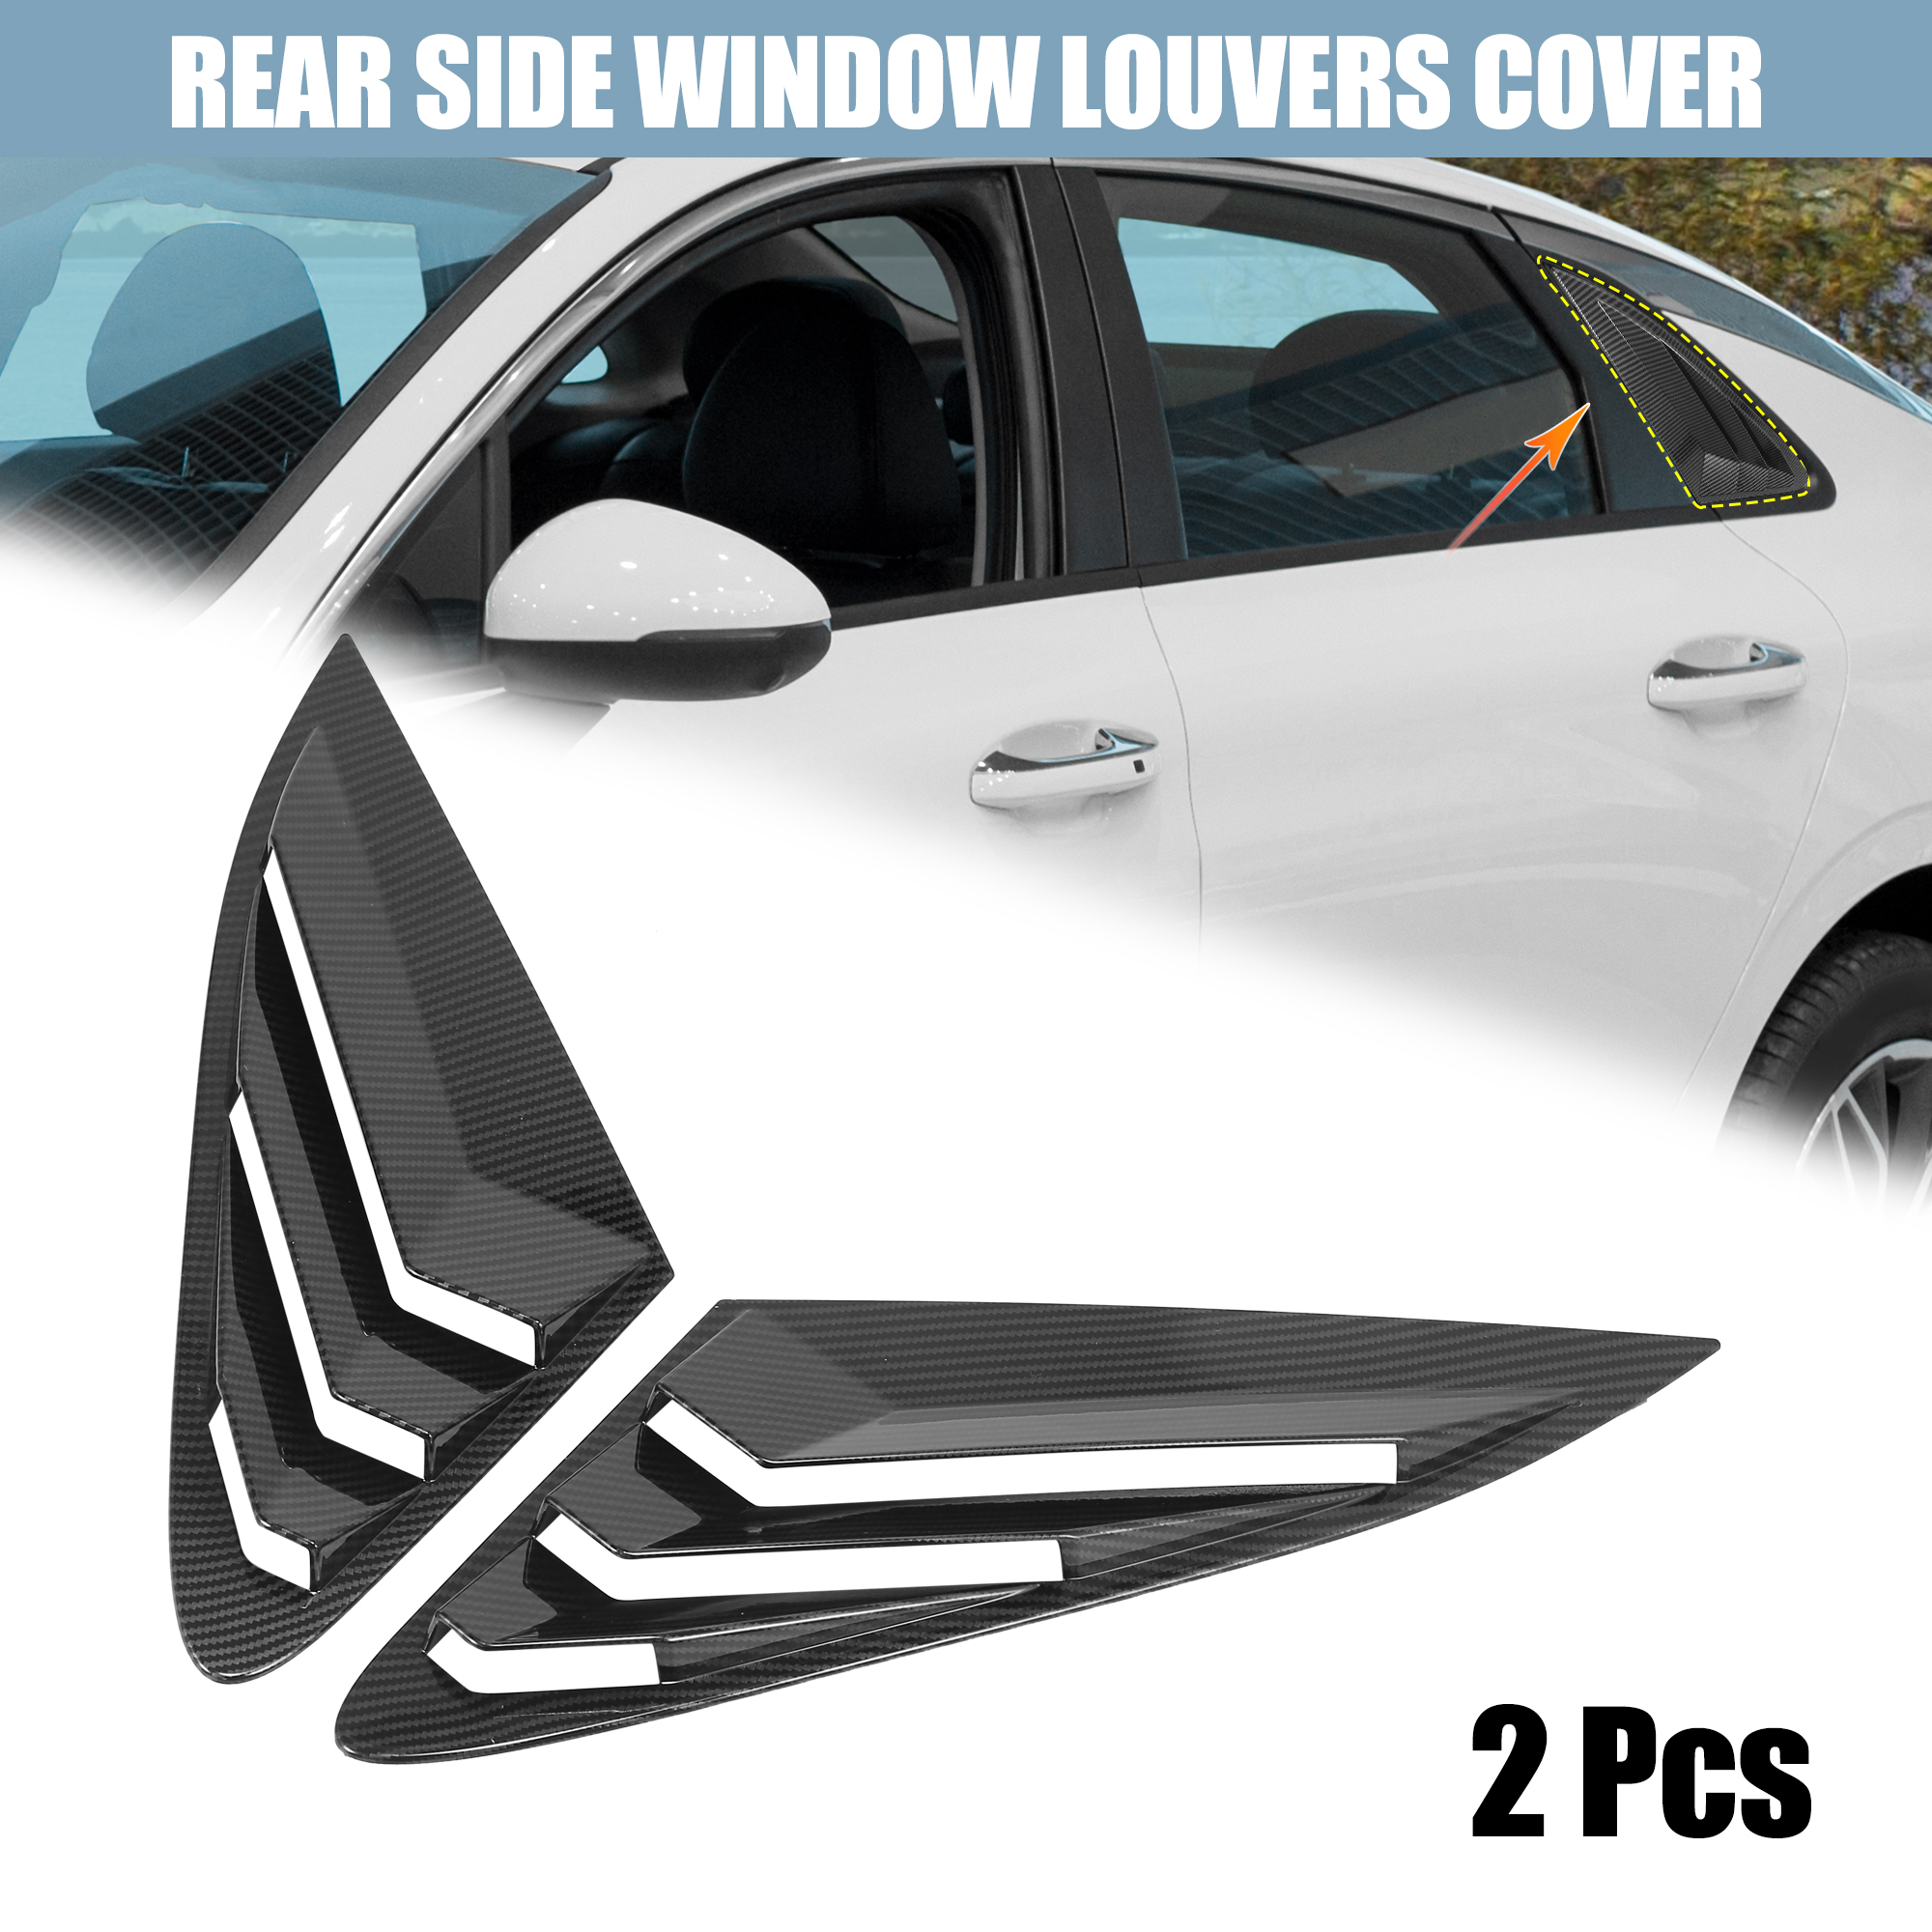 Unique Bargains 2pcs Rear Side Window Louvers Air Vent Cover Carbon Fiber Pattern for Kia K5 21